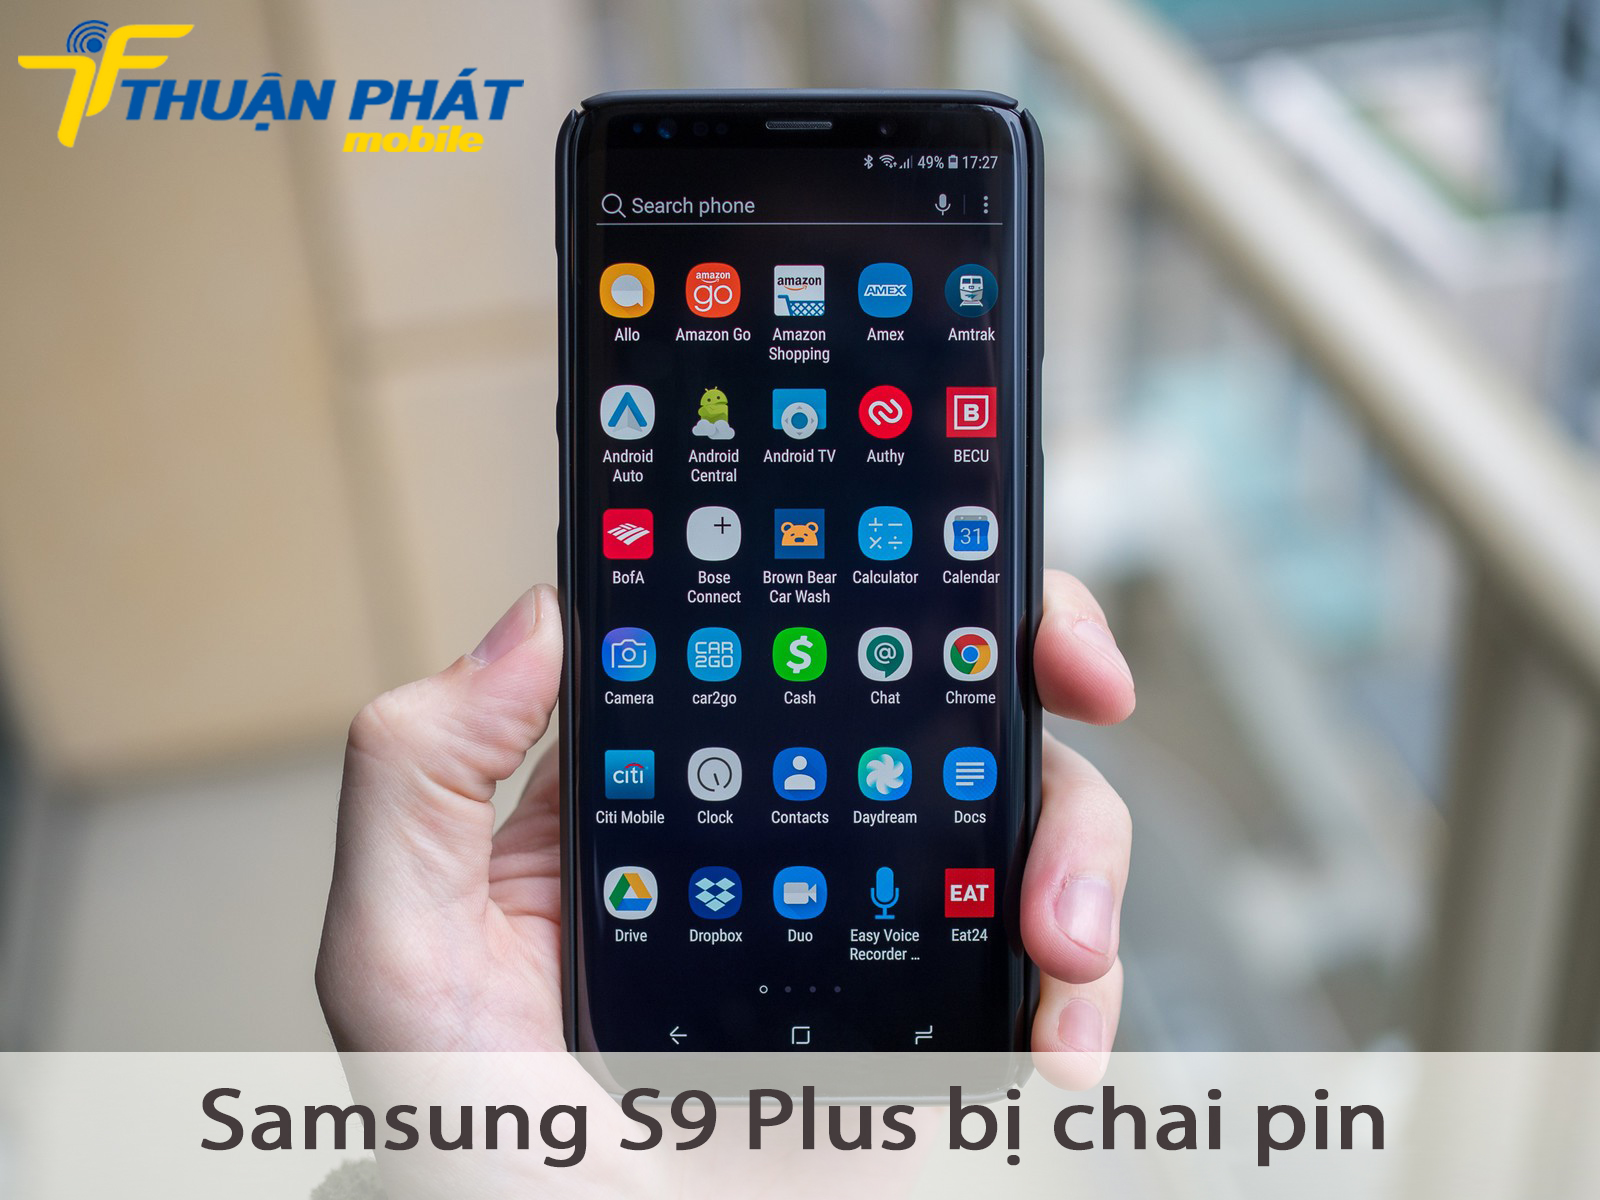 Samsung S9 Plus bị chai pin